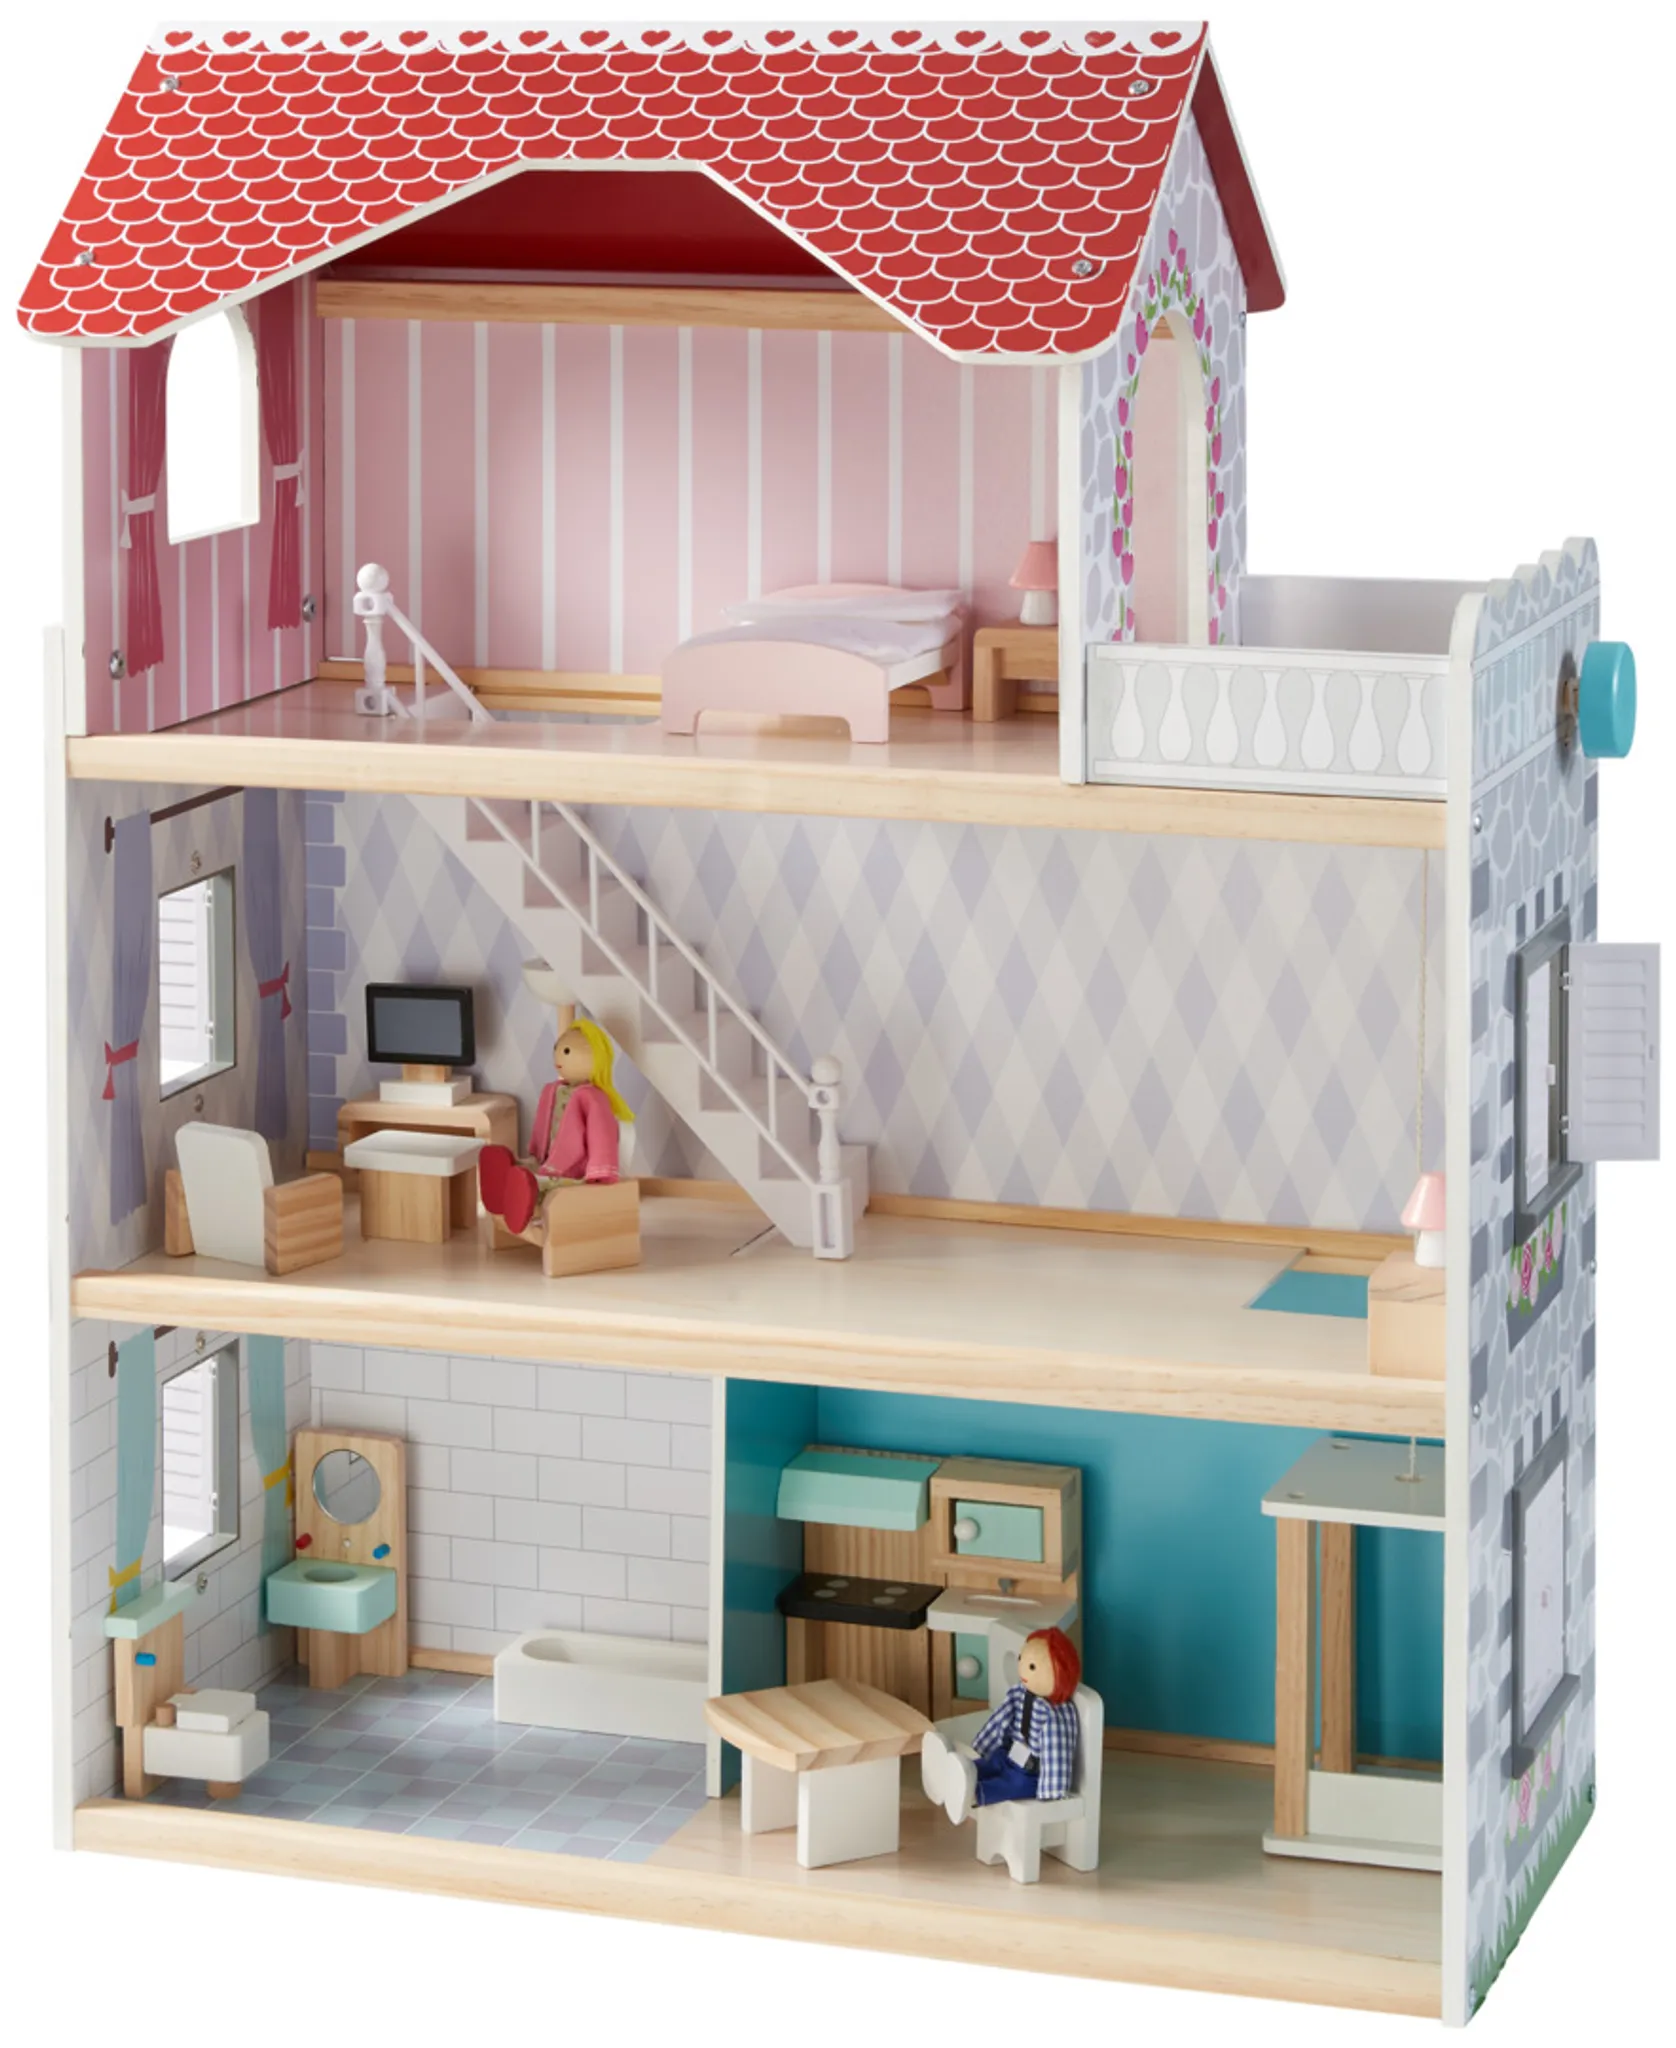 Kidland® Puppenhaus mit Aufzug, Treppe und